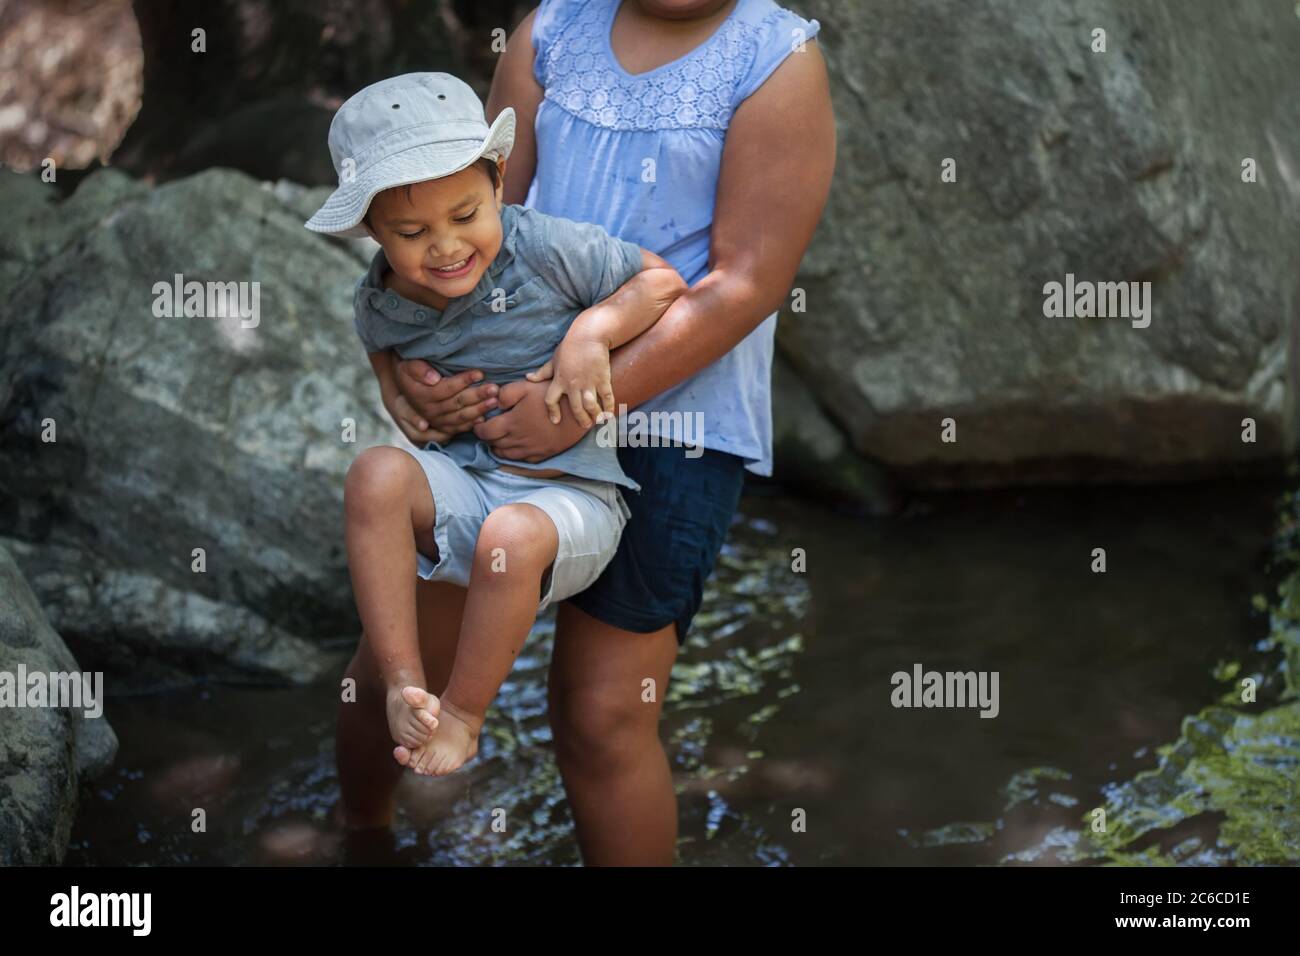 Große Schwester hält ihren kleinen Bruder über dem kalten Wasser aus einem Teich, während er nervös ist. Stockfoto